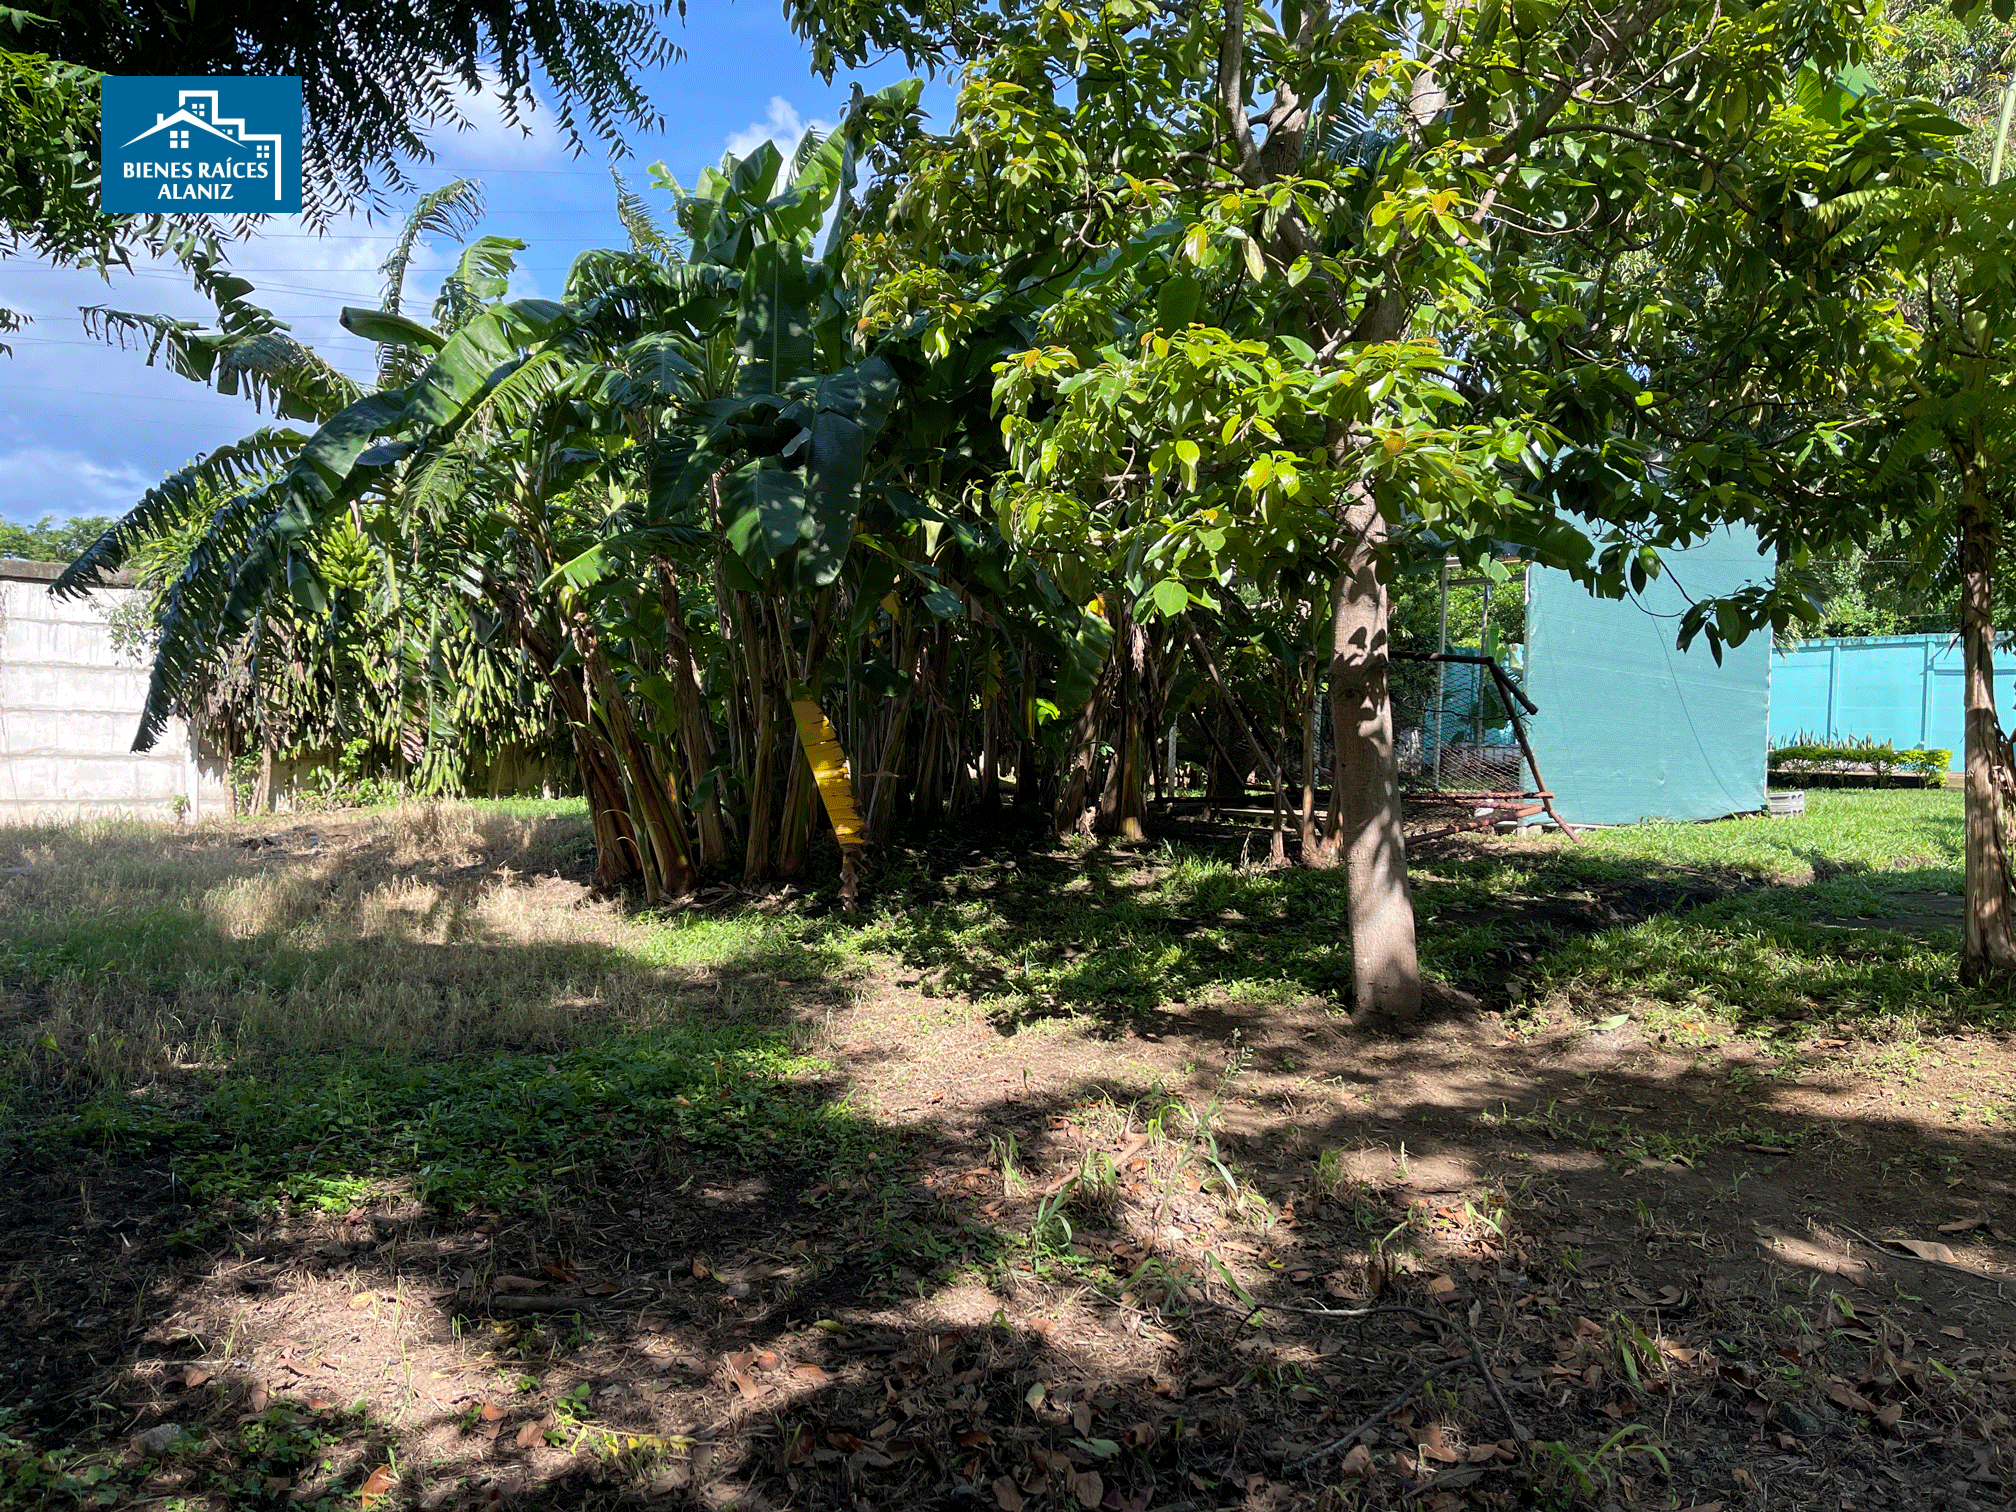 Se Vende Lindo Lote de Terreno en Ticuantepe, Managua